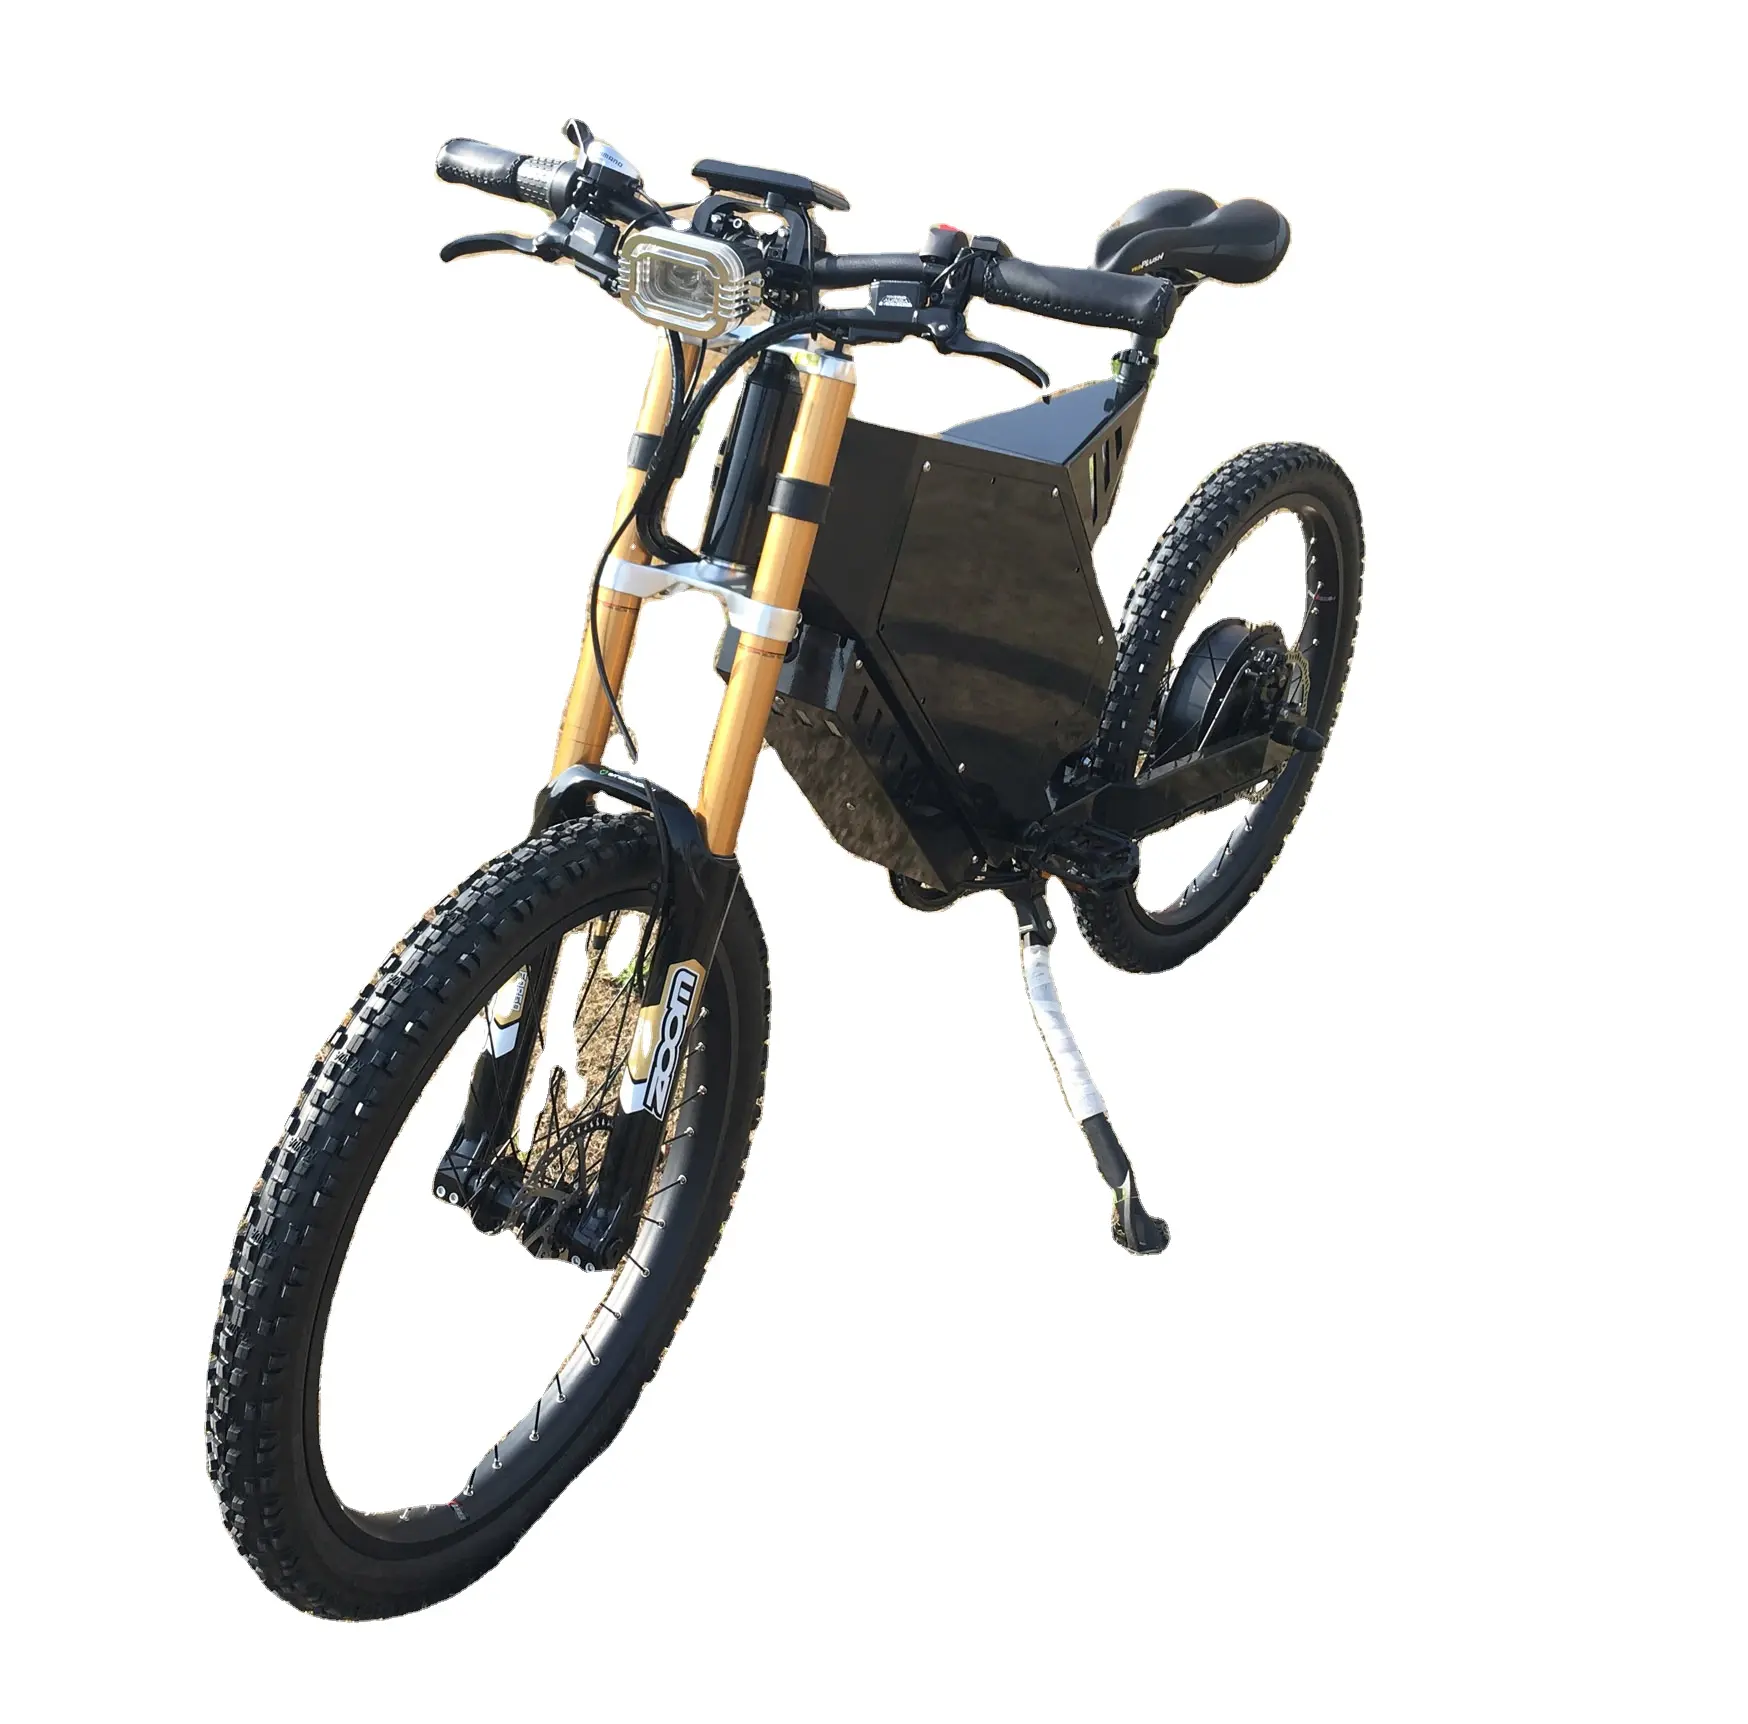 Telaio per bicicletta in lega di alluminio taobao telaio per motocicletta con telaio elettrico per bici elettrica boomber 72v 5000w 8000w 12000w